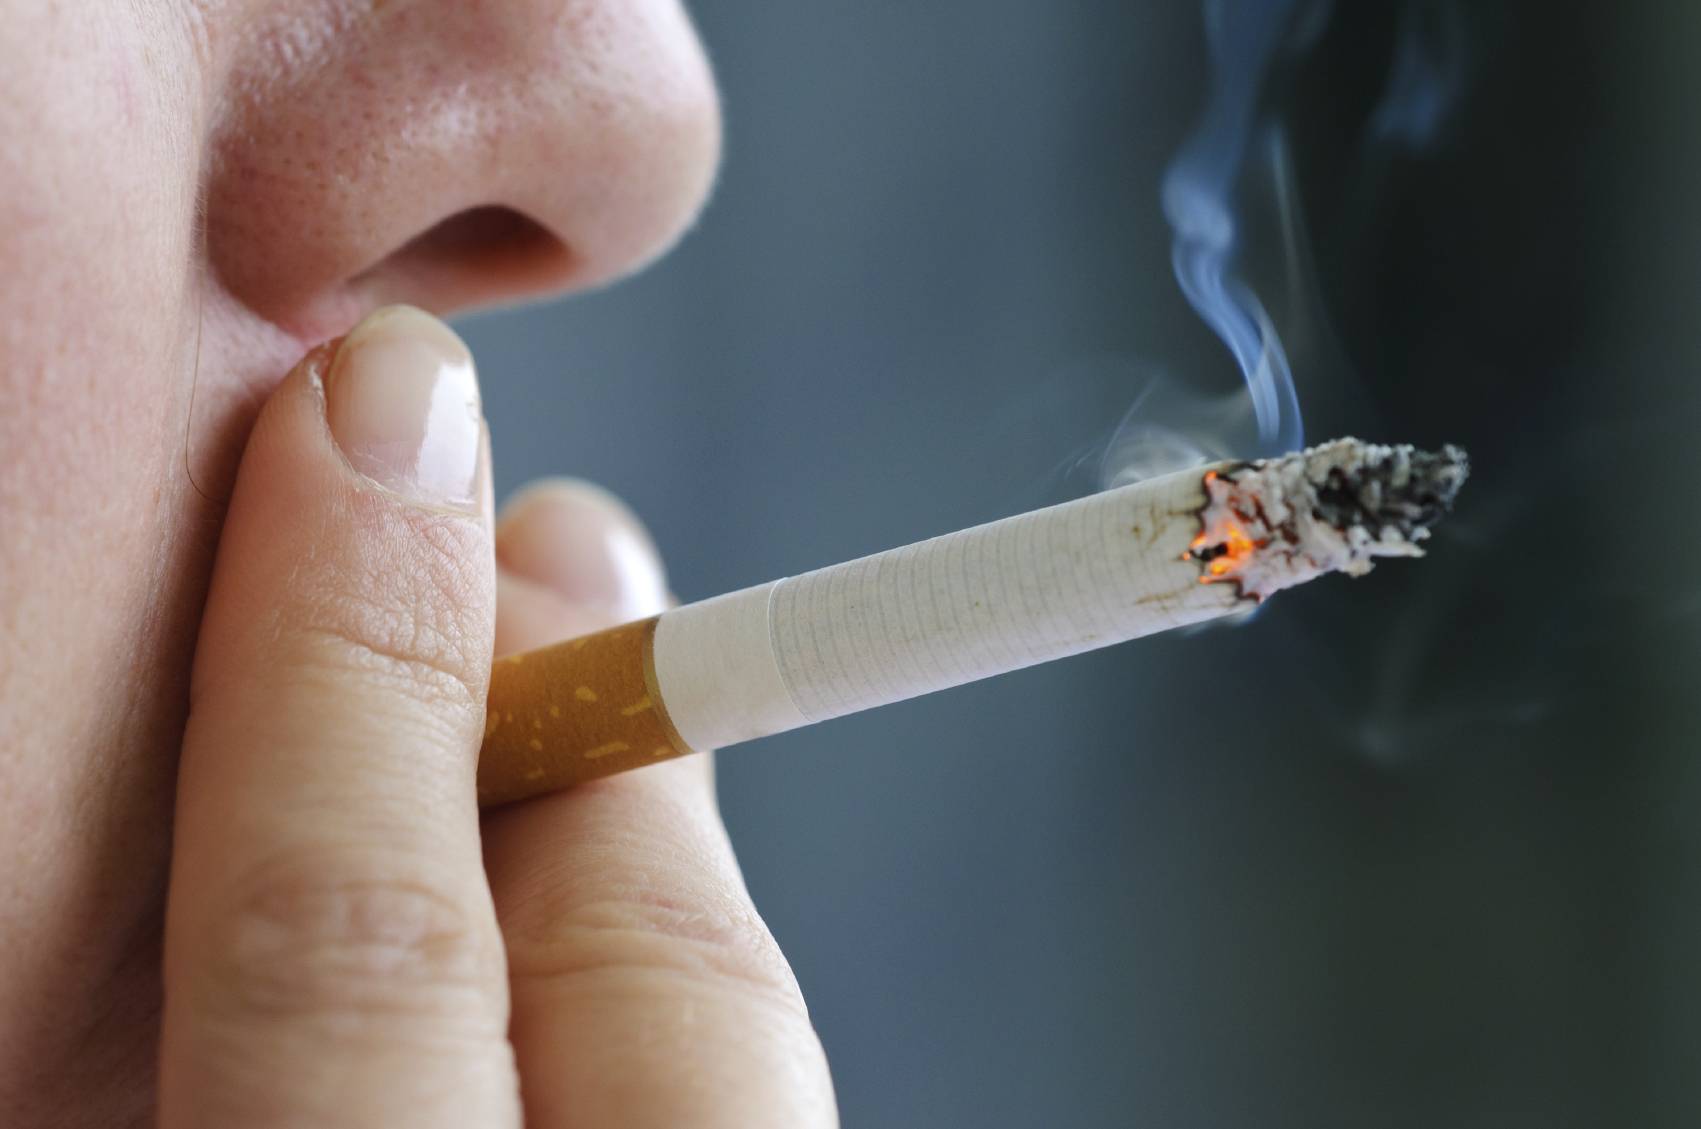 Le immissioni provocate dal fumo di sigaretta